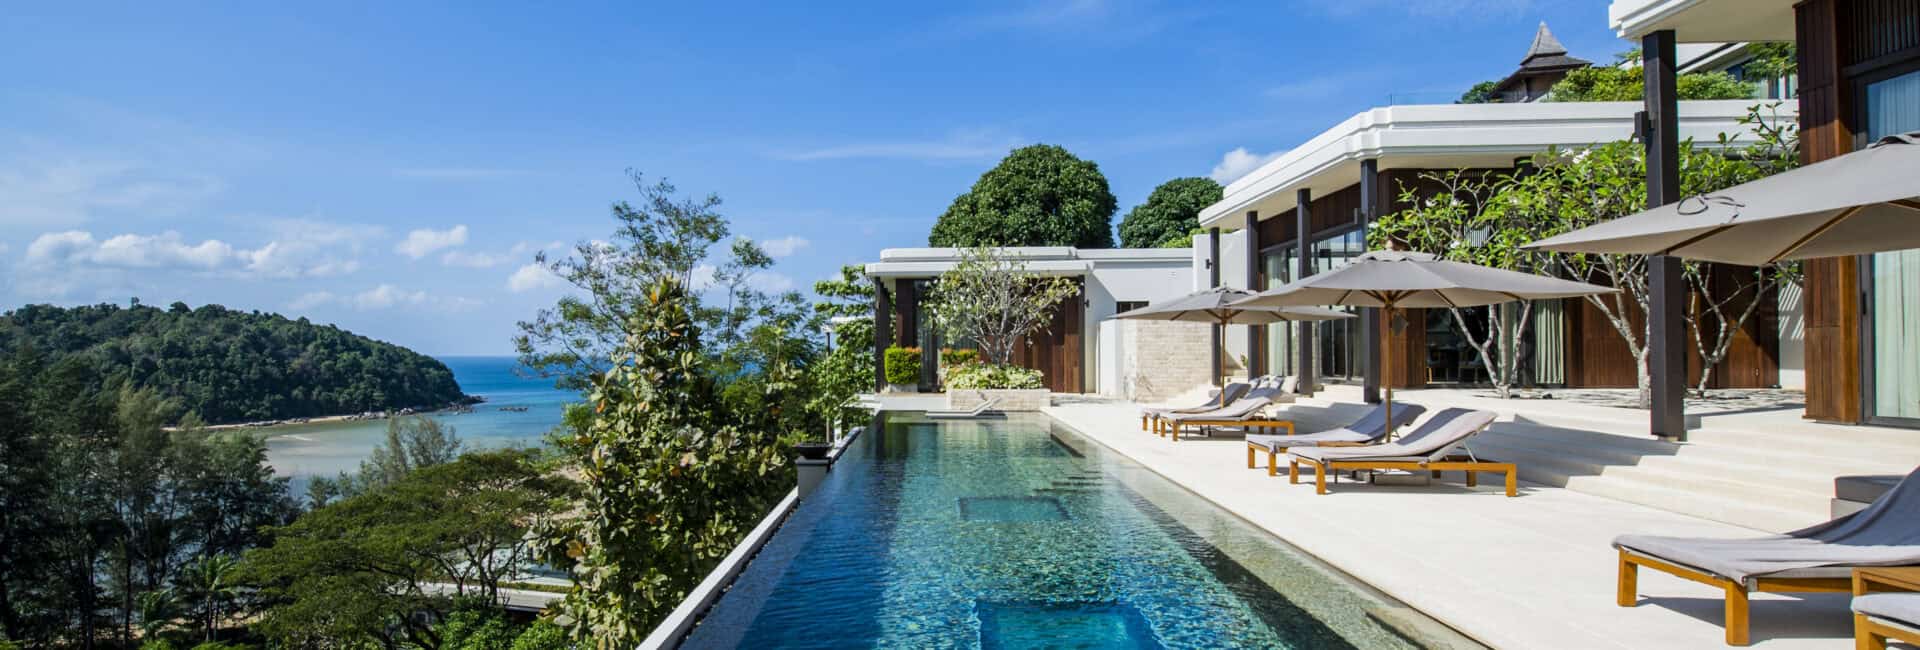 Anantara Layan Phuket Resort - Residence